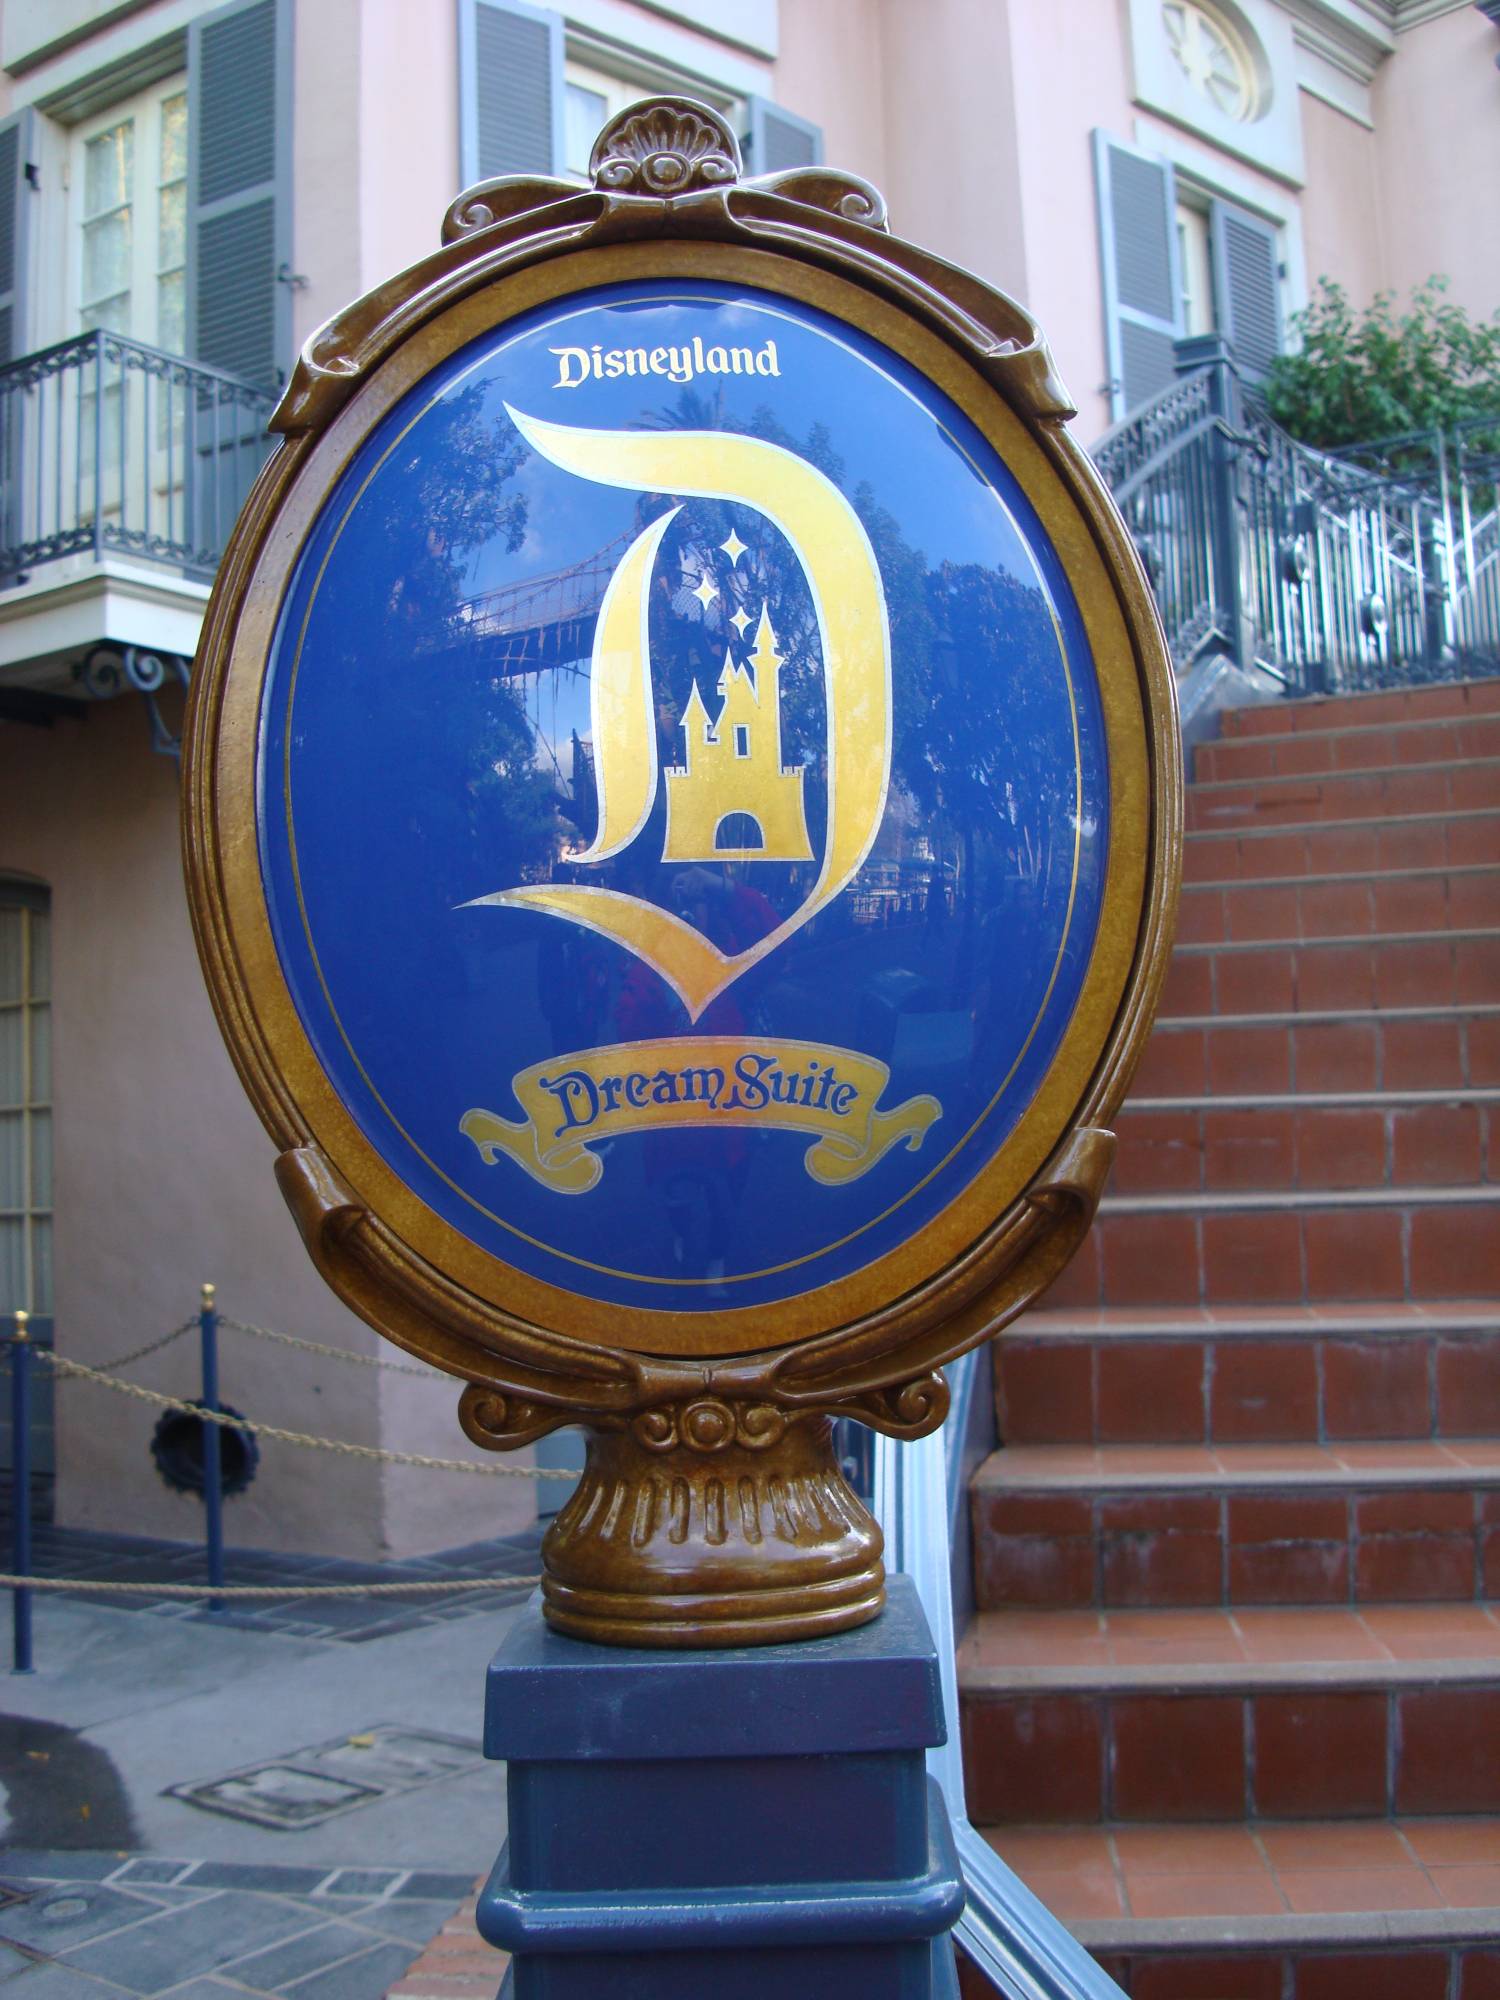 New Orleans Square - Disneyland Dream Suite Signage